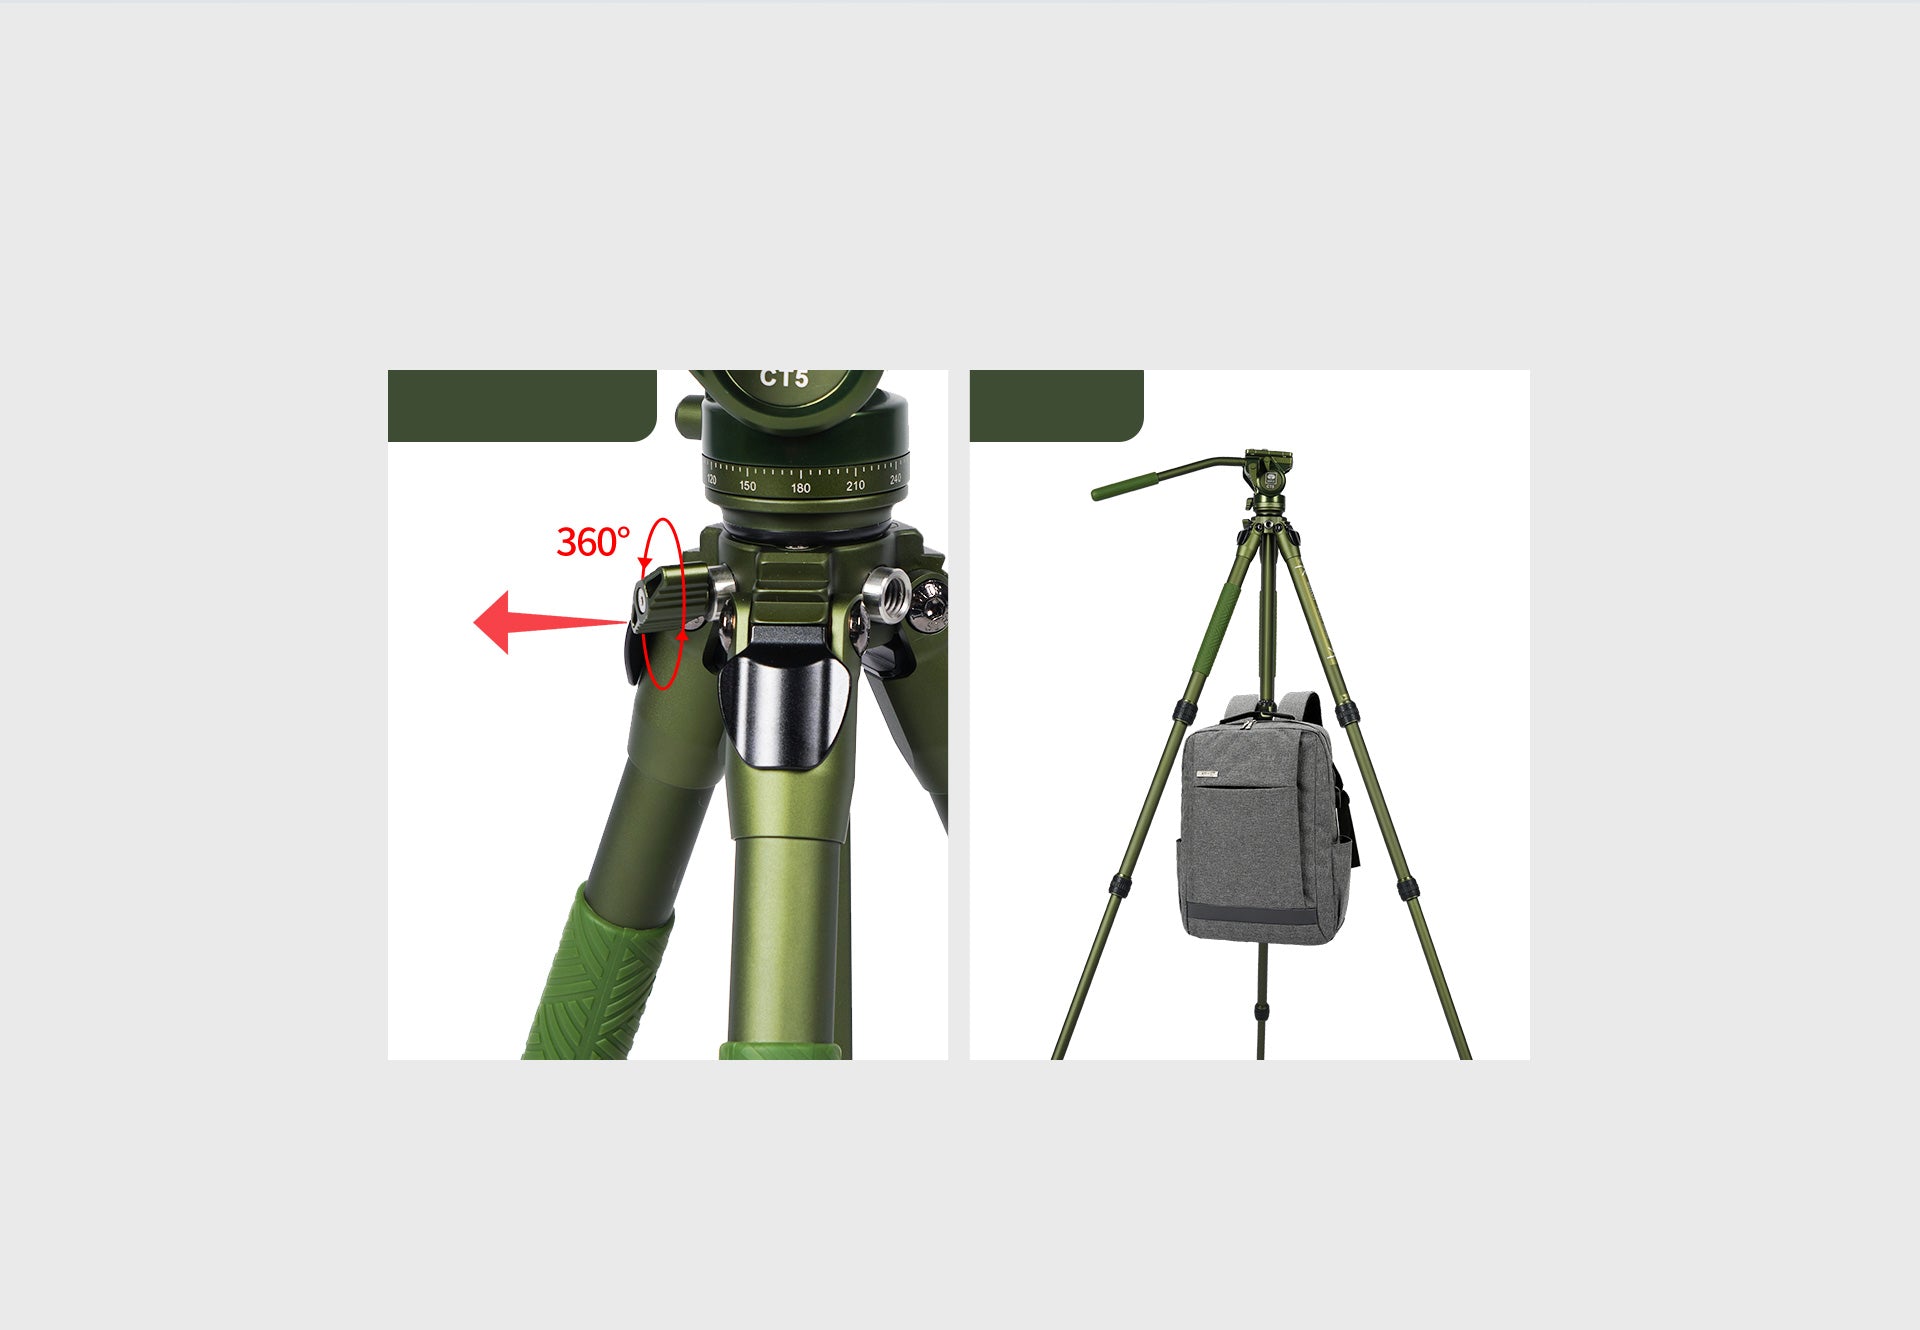 thiết kế chân máy quay Sirui - Sông hồng camera